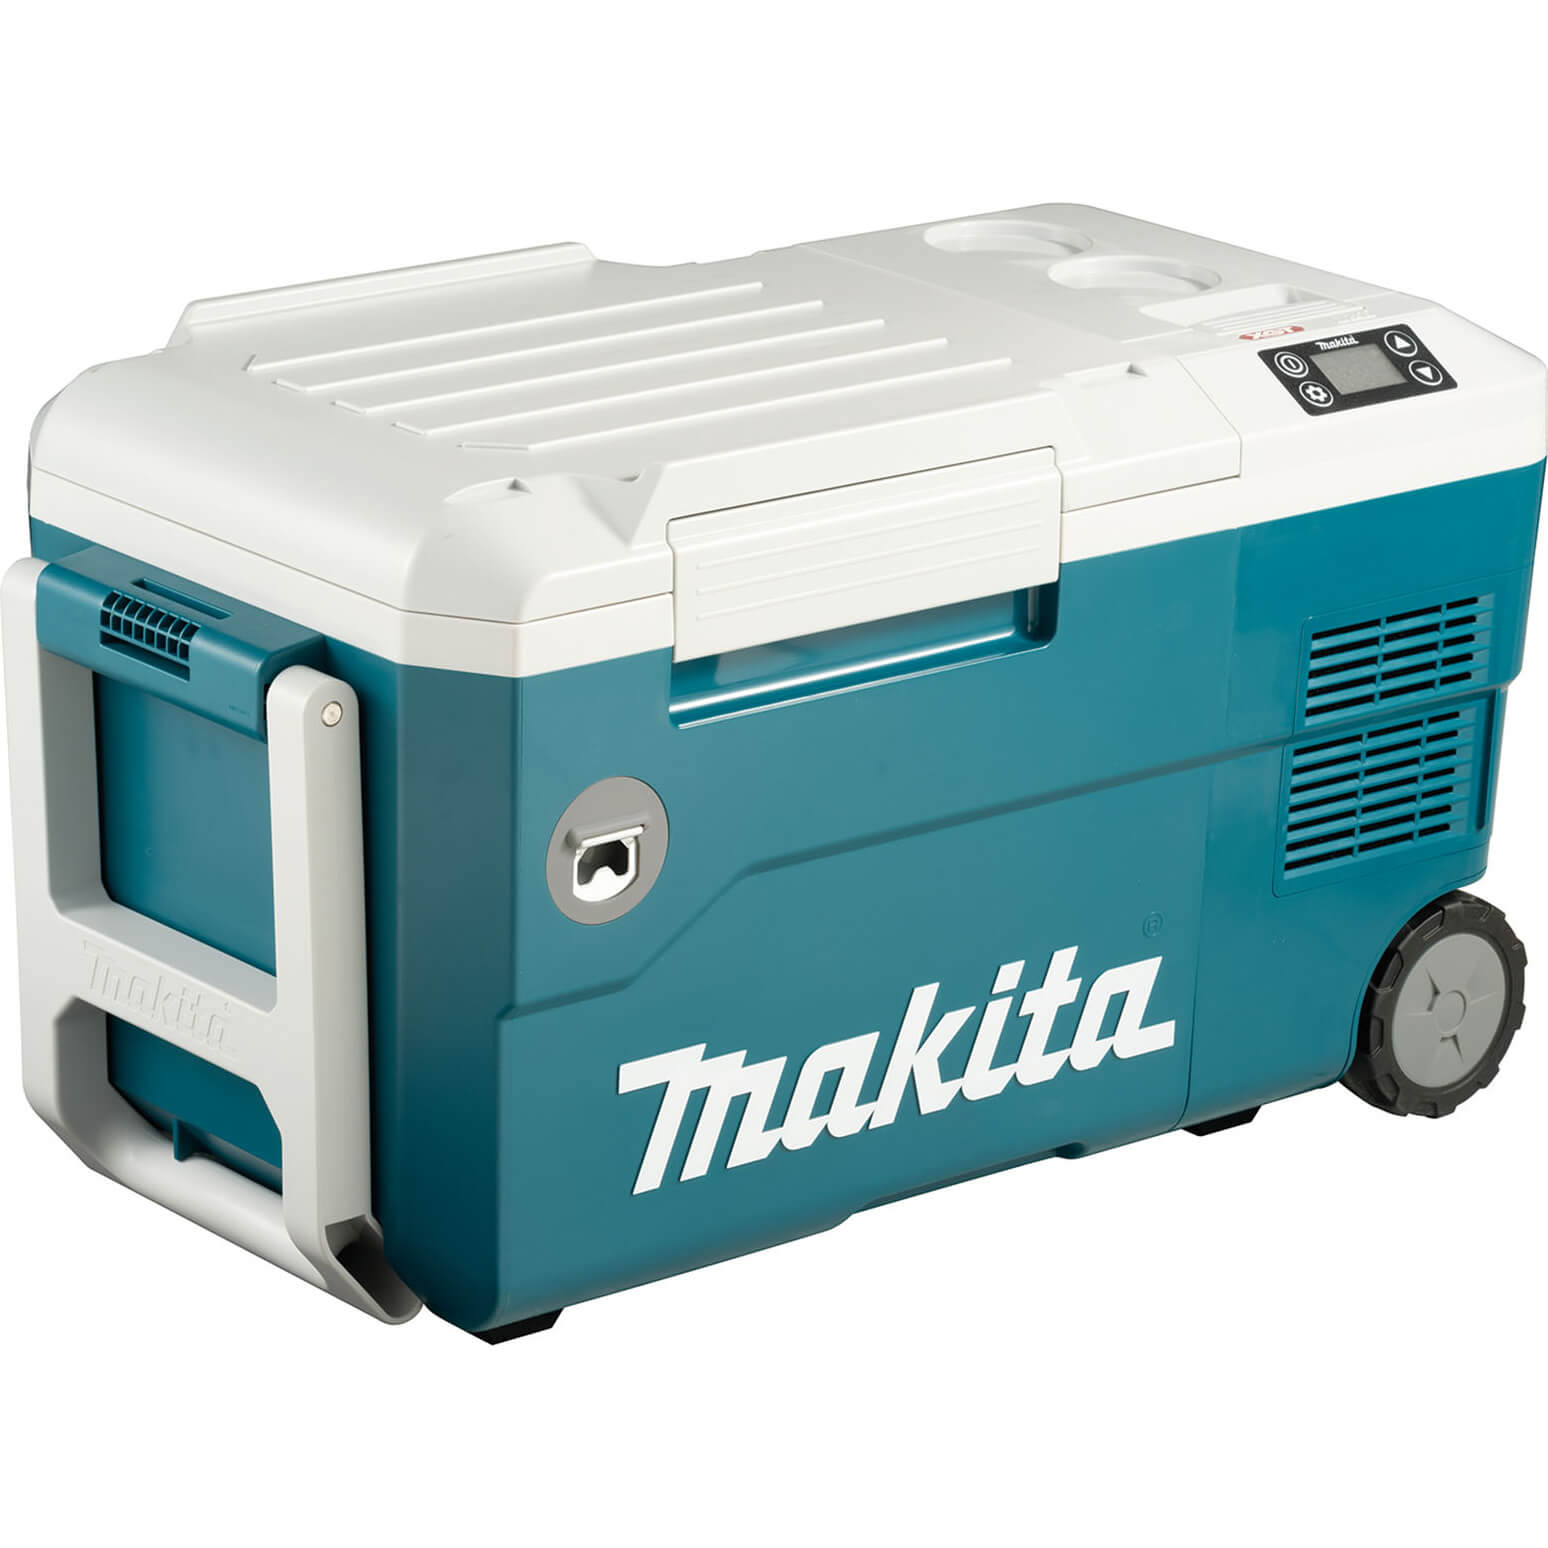 Photo of Makita Cw001g 40v Max Xgt Cordless Drinks Cooler And Warmer Box